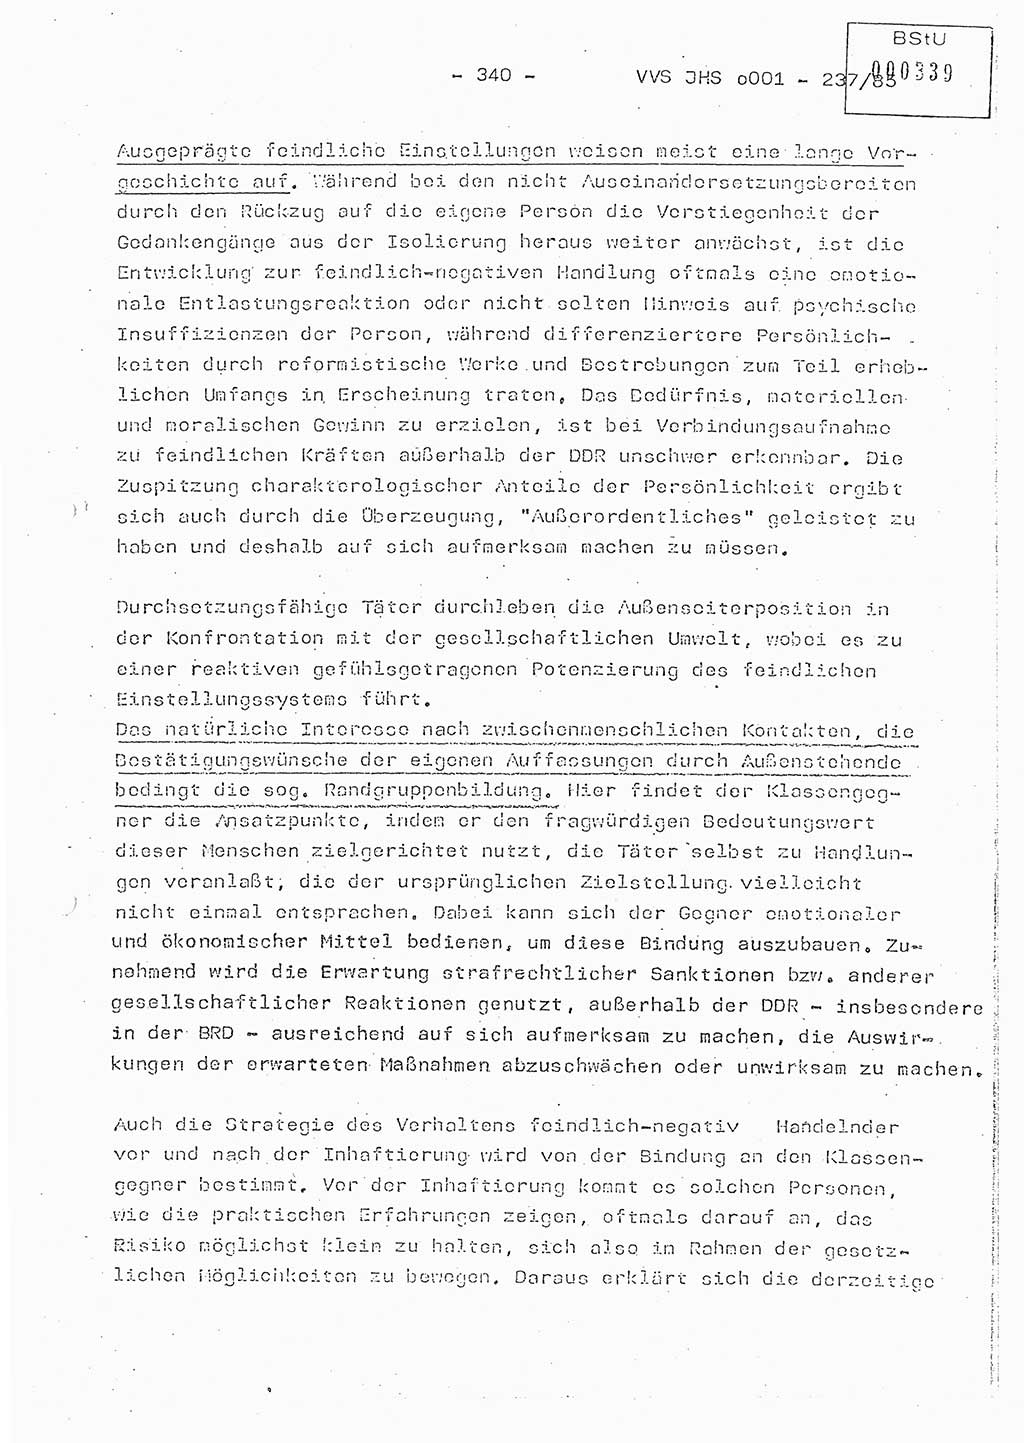 Dissertation Oberstleutnant Peter Jakulski (JHS), Oberstleutnat Christian Rudolph (HA Ⅸ), Major Horst Böttger (ZMD), Major Wolfgang Grüneberg (JHS), Major Albert Meutsch (JHS), Ministerium für Staatssicherheit (MfS) [Deutsche Demokratische Republik (DDR)], Juristische Hochschule (JHS), Vertrauliche Verschlußsache (VVS) o001-237/85, Potsdam 1985, Seite 340 (Diss. MfS DDR JHS VVS o001-237/85 1985, S. 340)